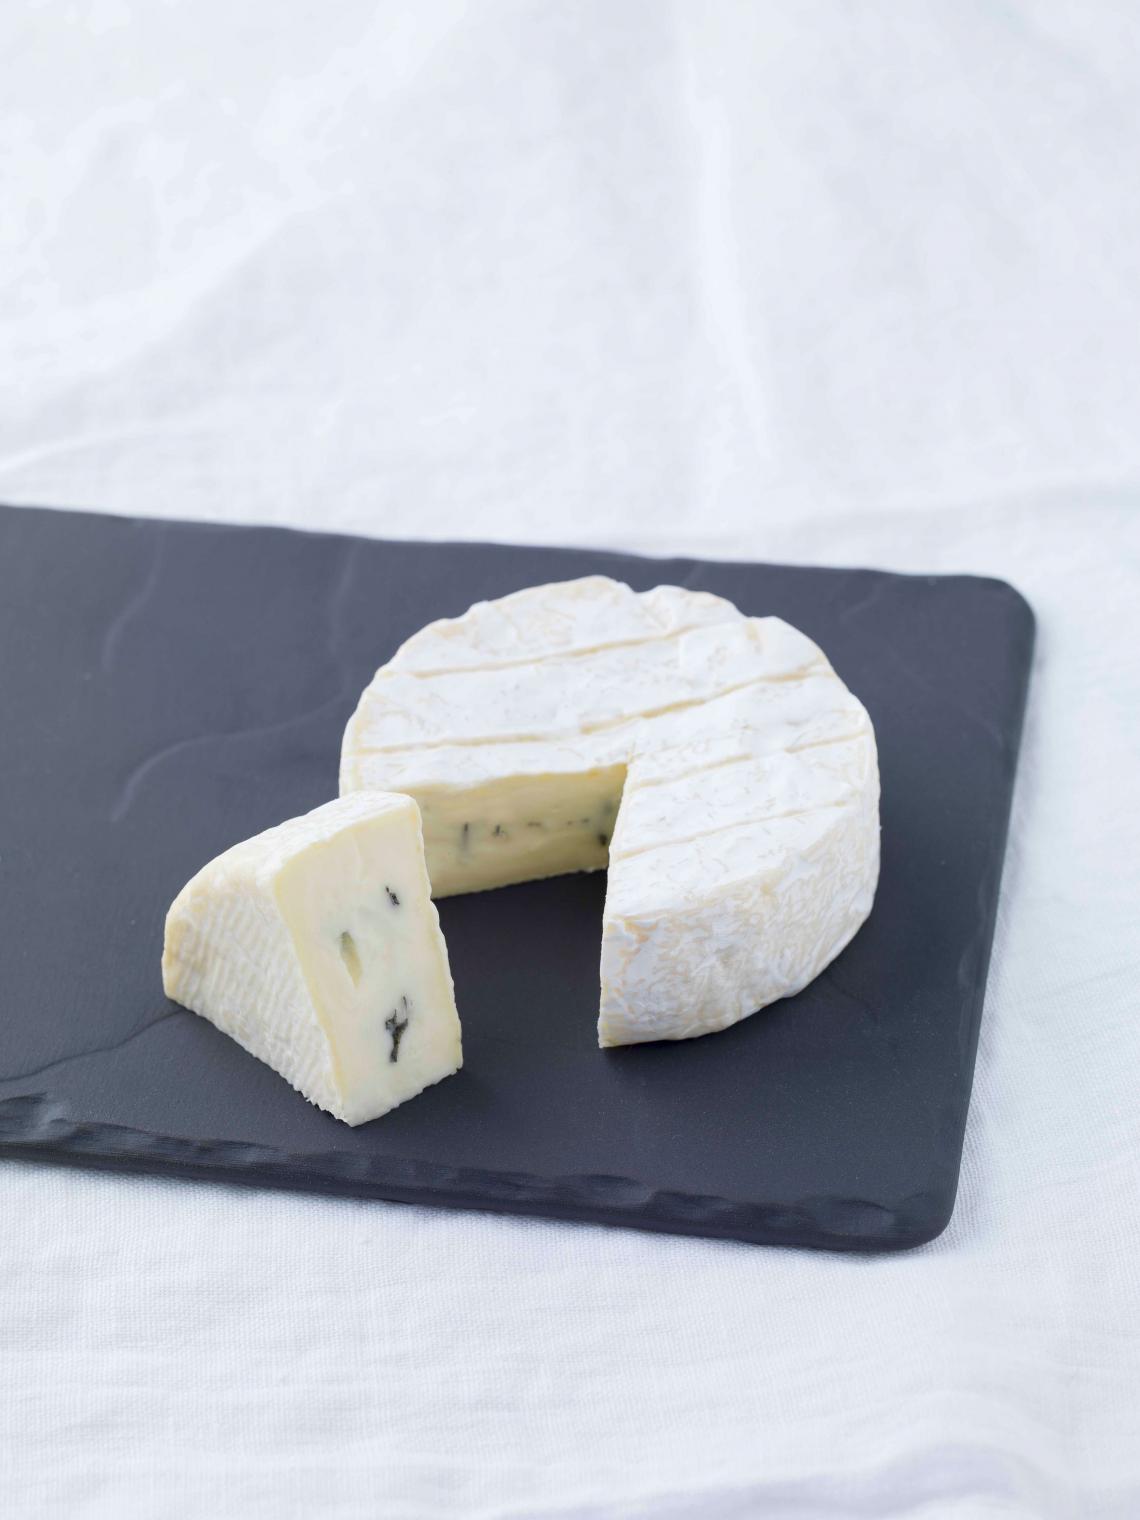 ILE DE FRANCE® Brie au Bleu on a plate